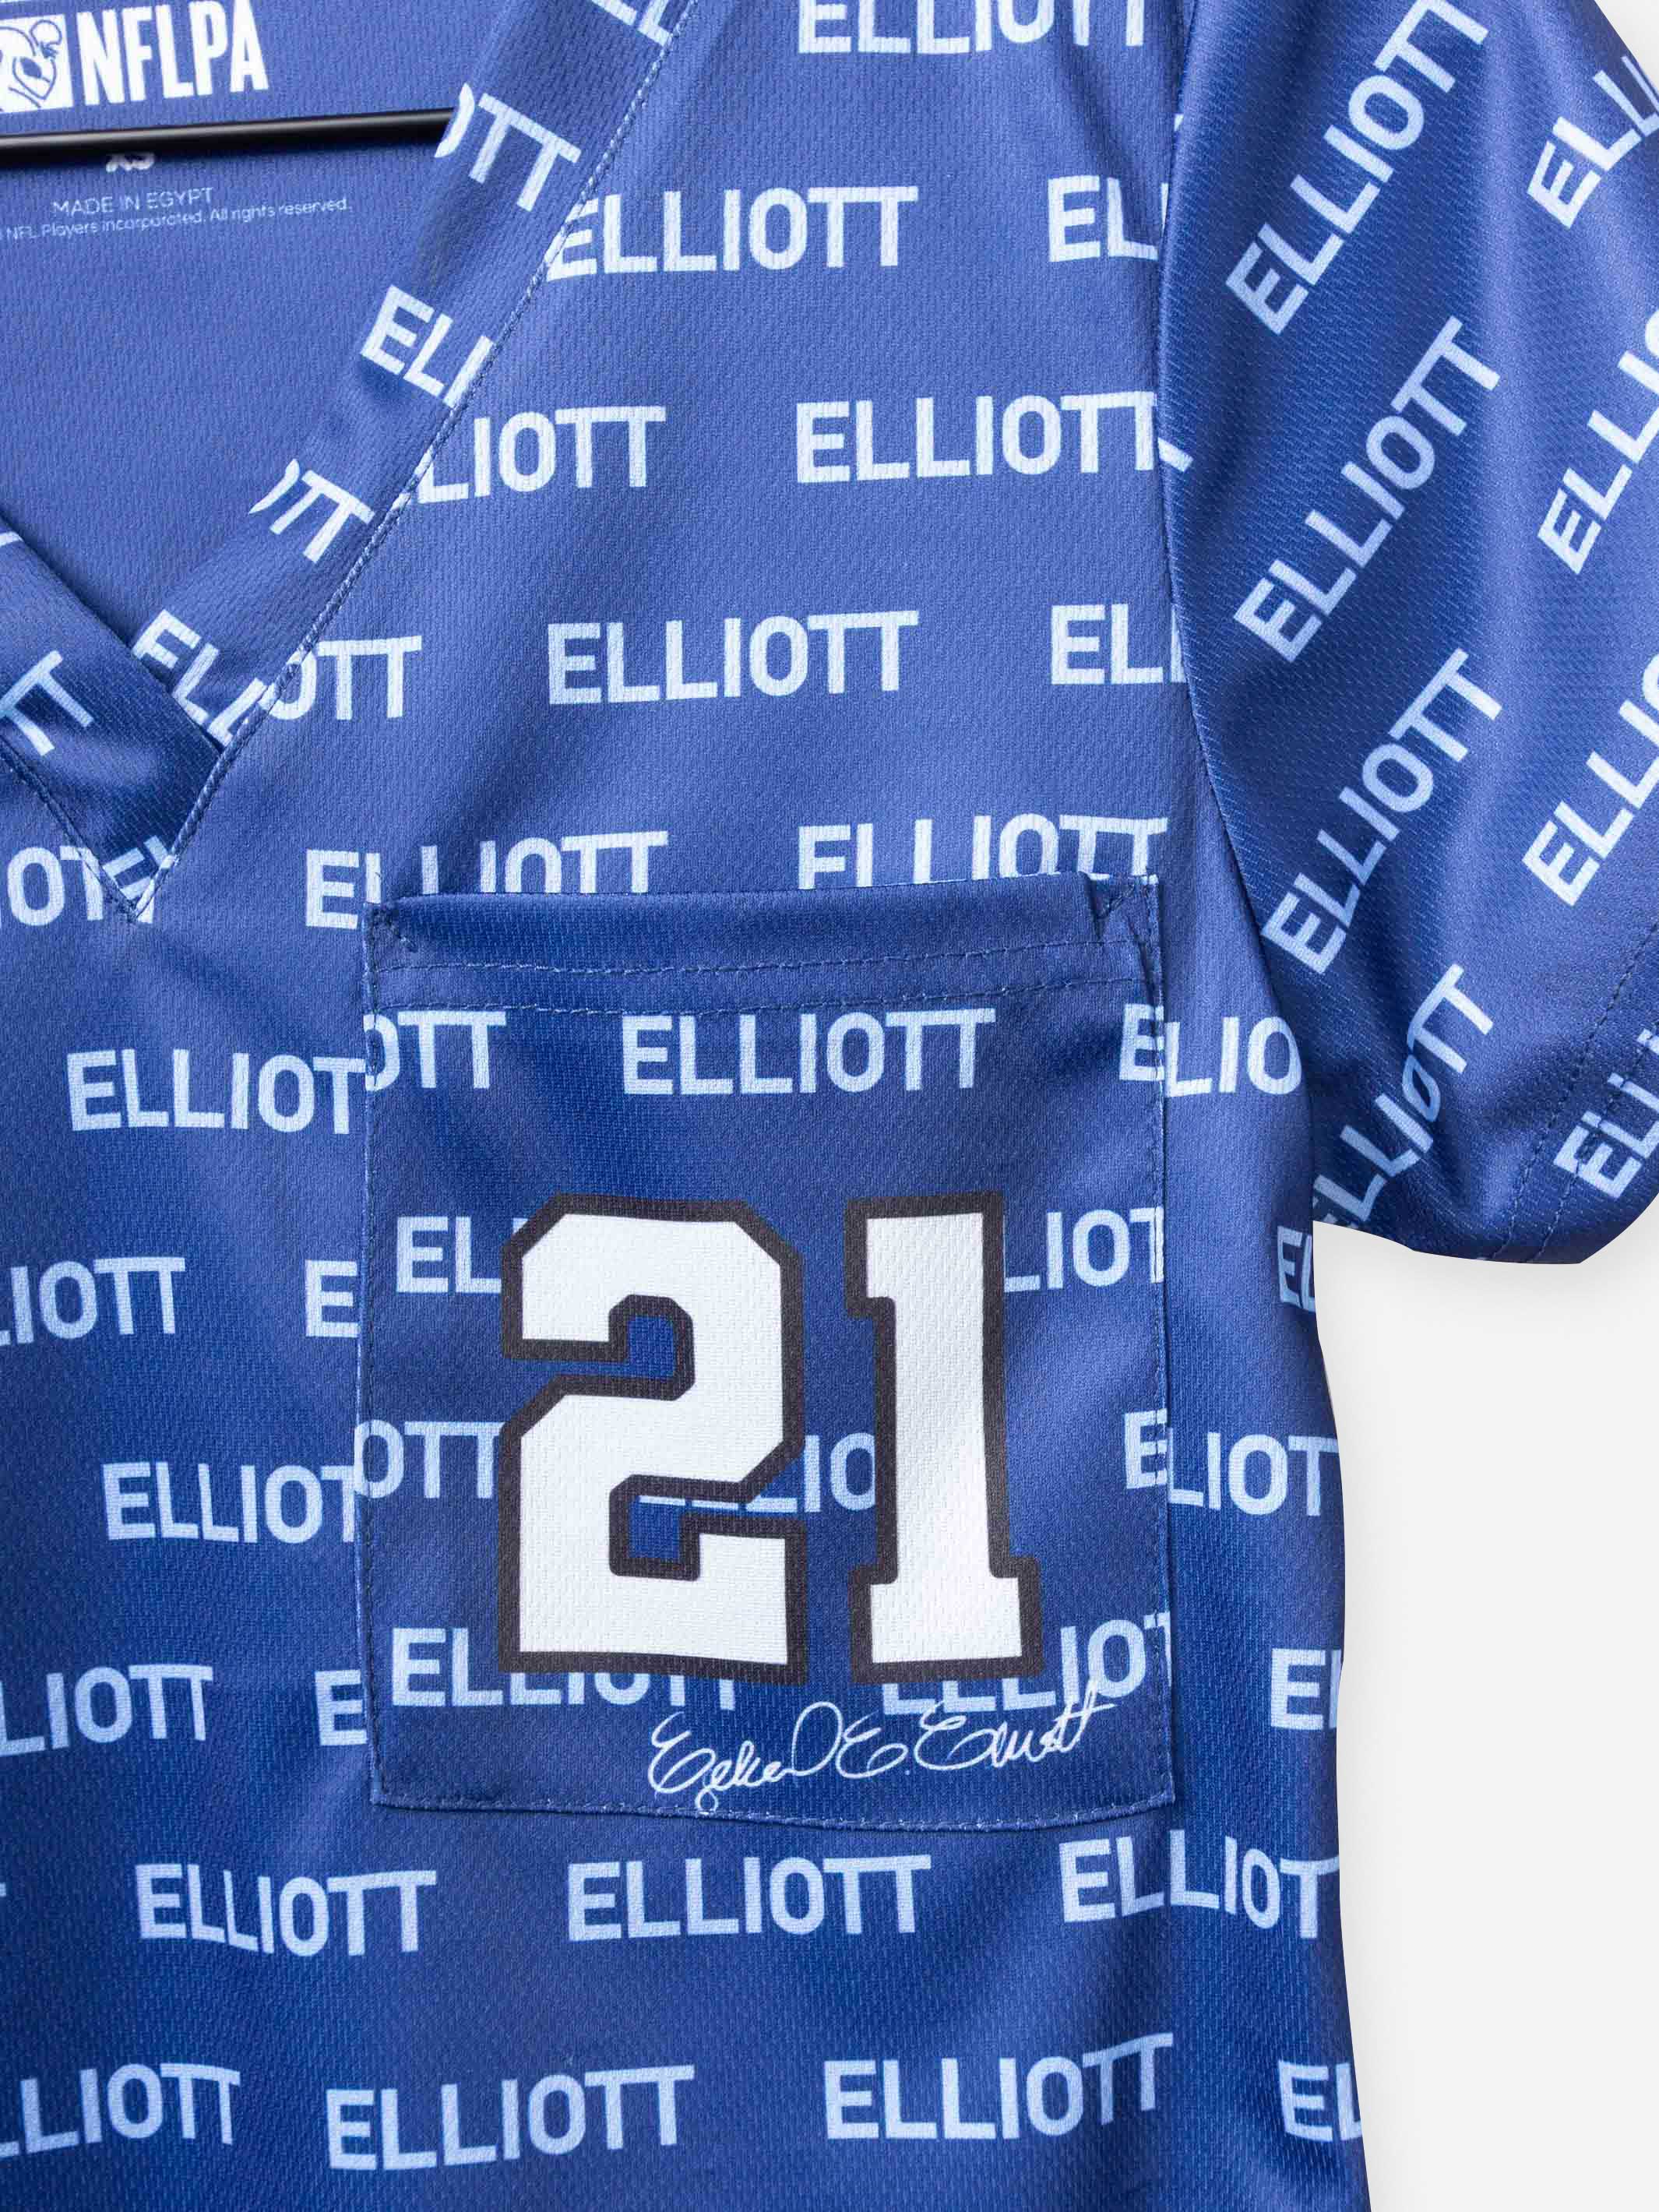 Women's Ezekiel Elliott Jersey Scrub Top in Blue number 21 football